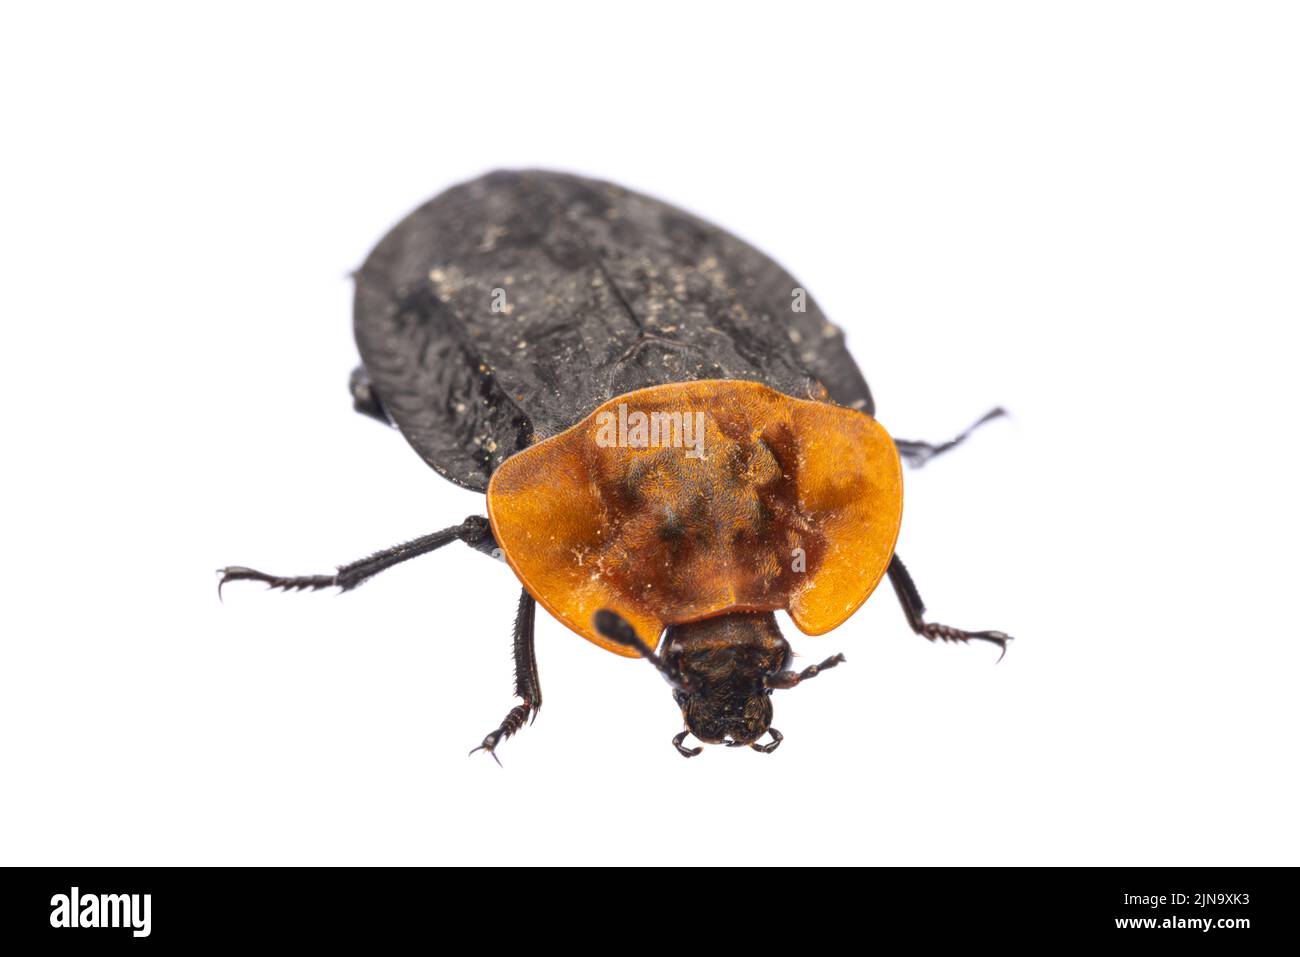 Insectos de europa - Escarabajos: Vista frontal del escarabajo carrión de pecho rojo ( Oiceoptoma thoracicum german Rothalsige Silphe ) aislado sobre fondo blanco Foto de stock